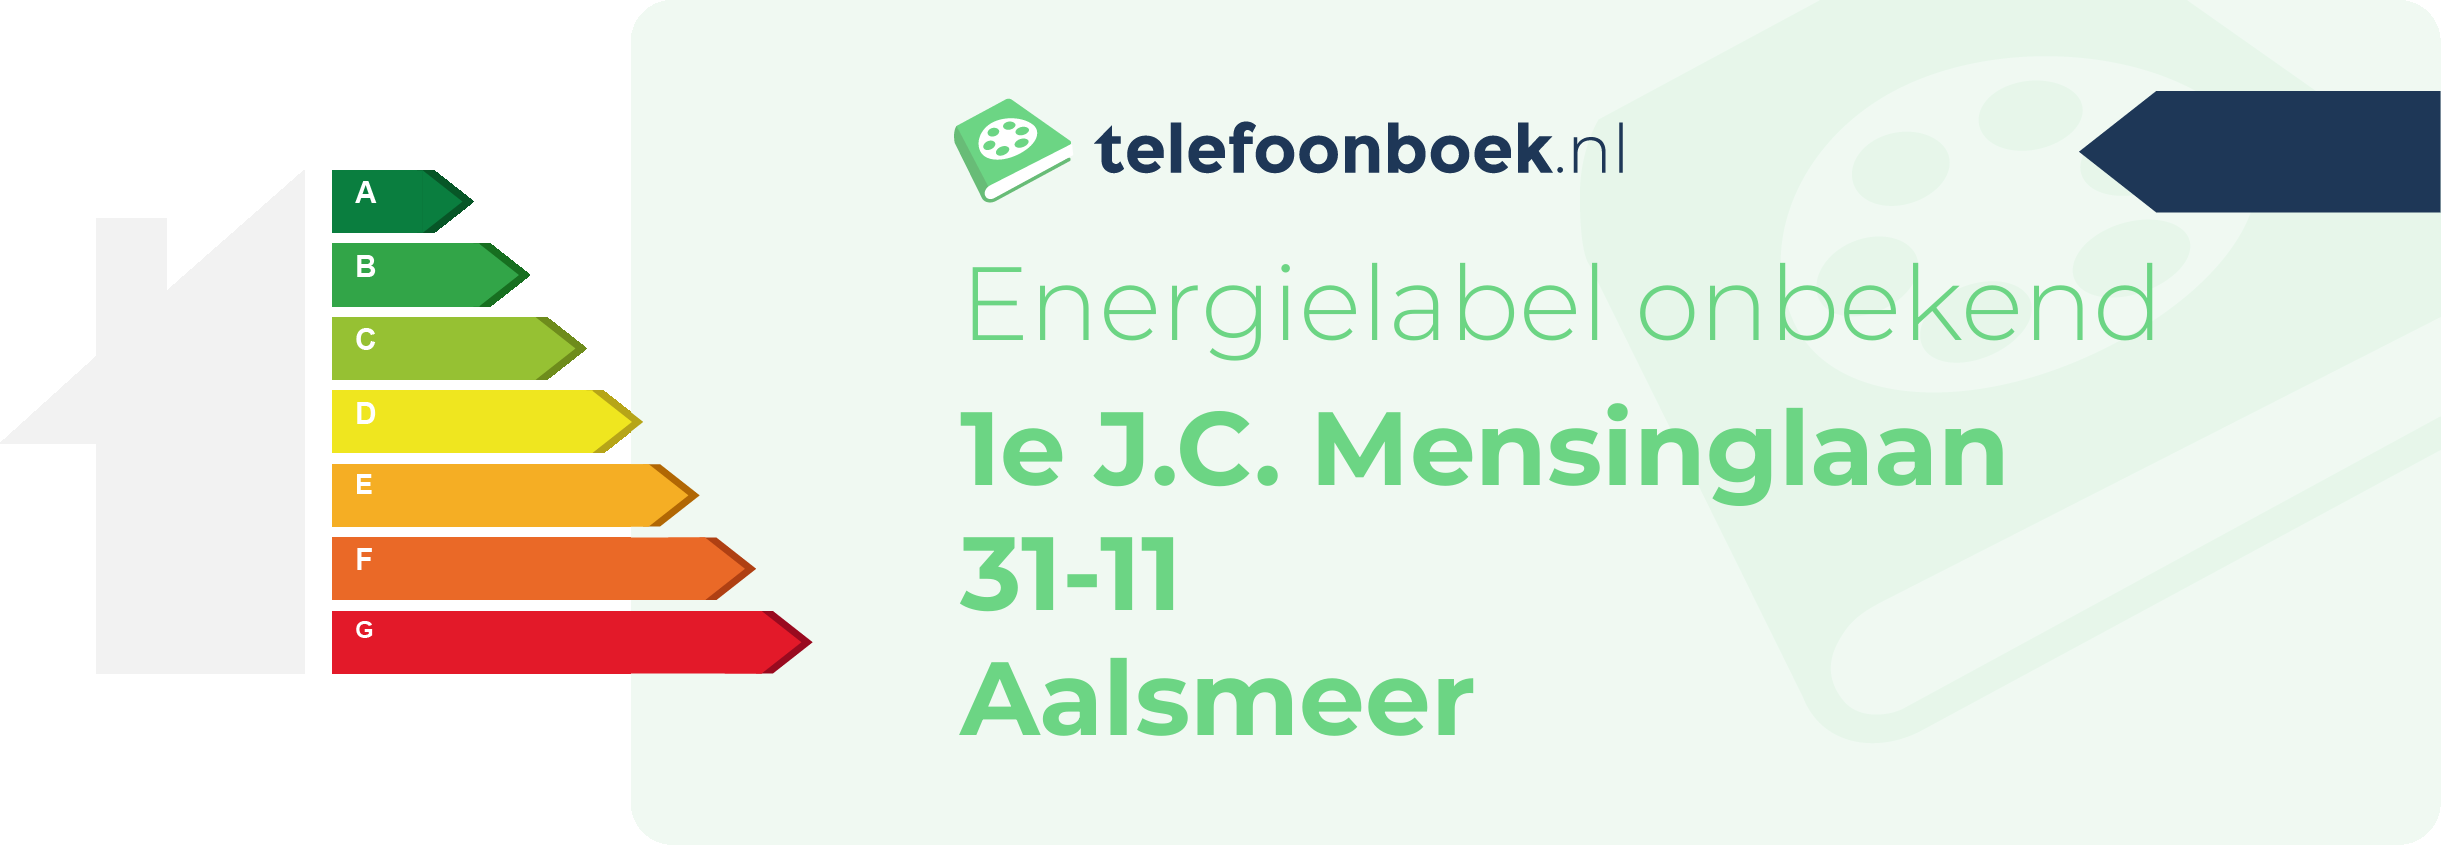 Energielabel 1e J.C. Mensinglaan 31-11 Aalsmeer